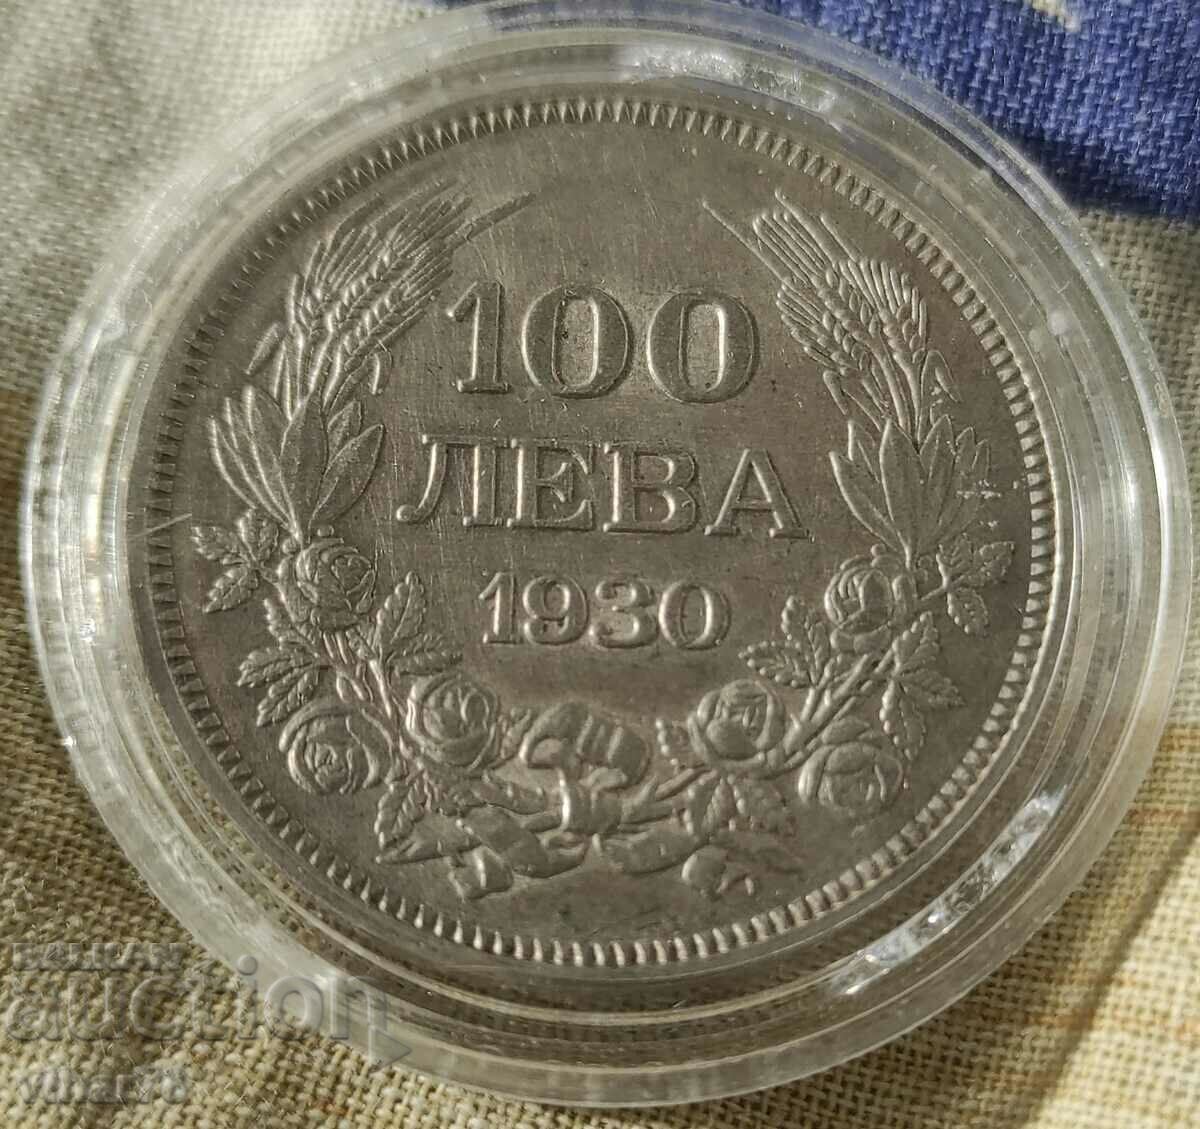 ΑΣΗΜΕΝΙΟ ΝΟΜΙΣΜΑ 100 λέβα 1930